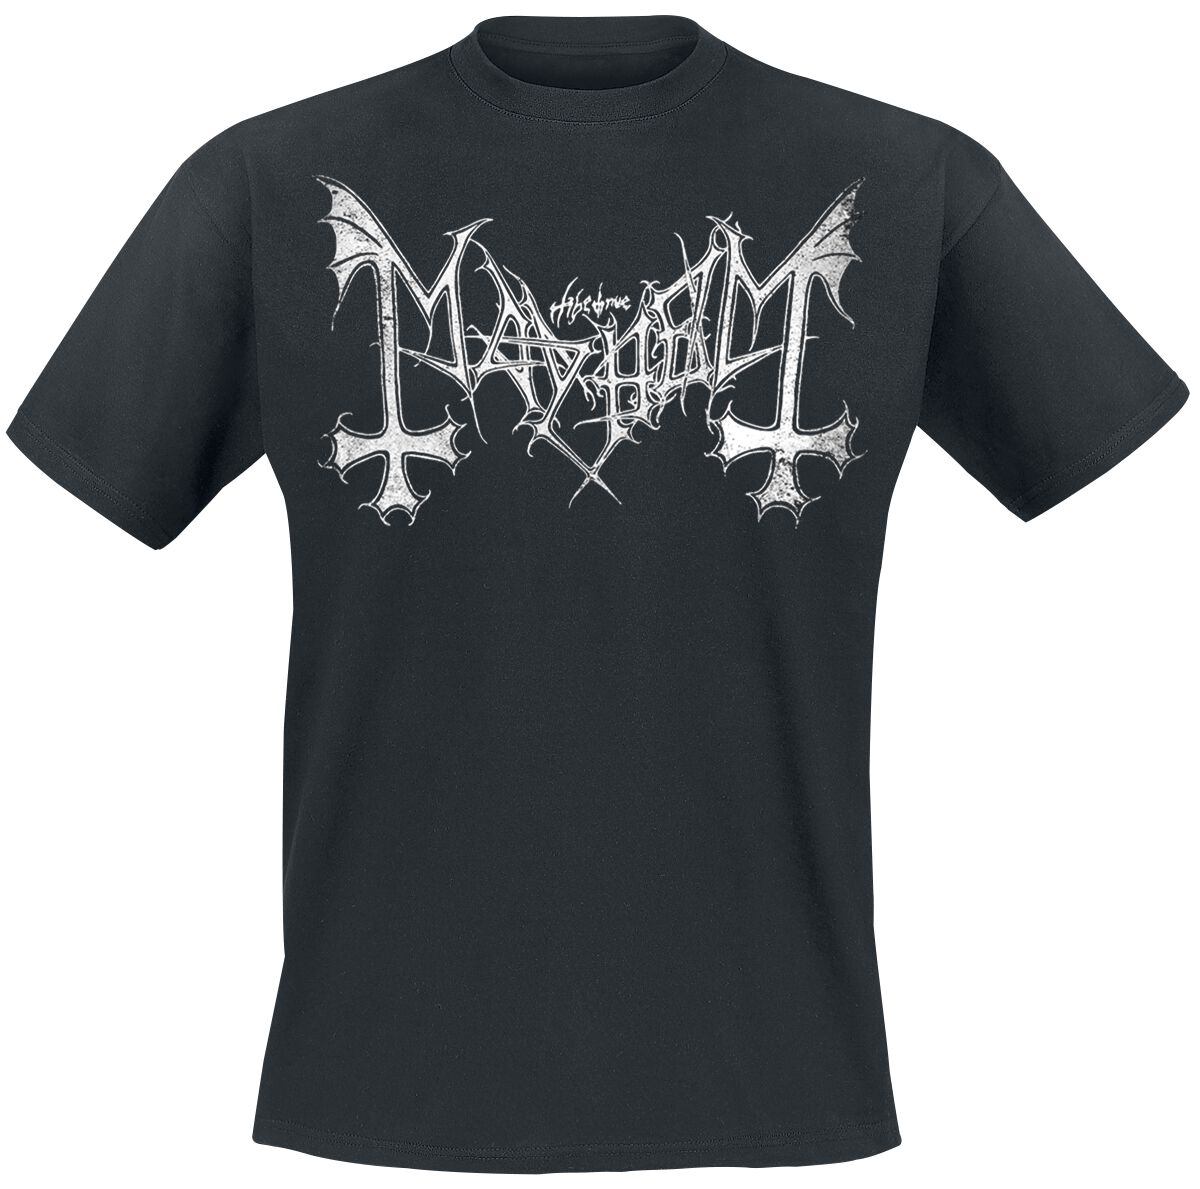 Mayhem T-Shirt - Distressed Logo - S bis XL - für Männer - Größe M - schwarz  - Lizenziertes Merchandise!